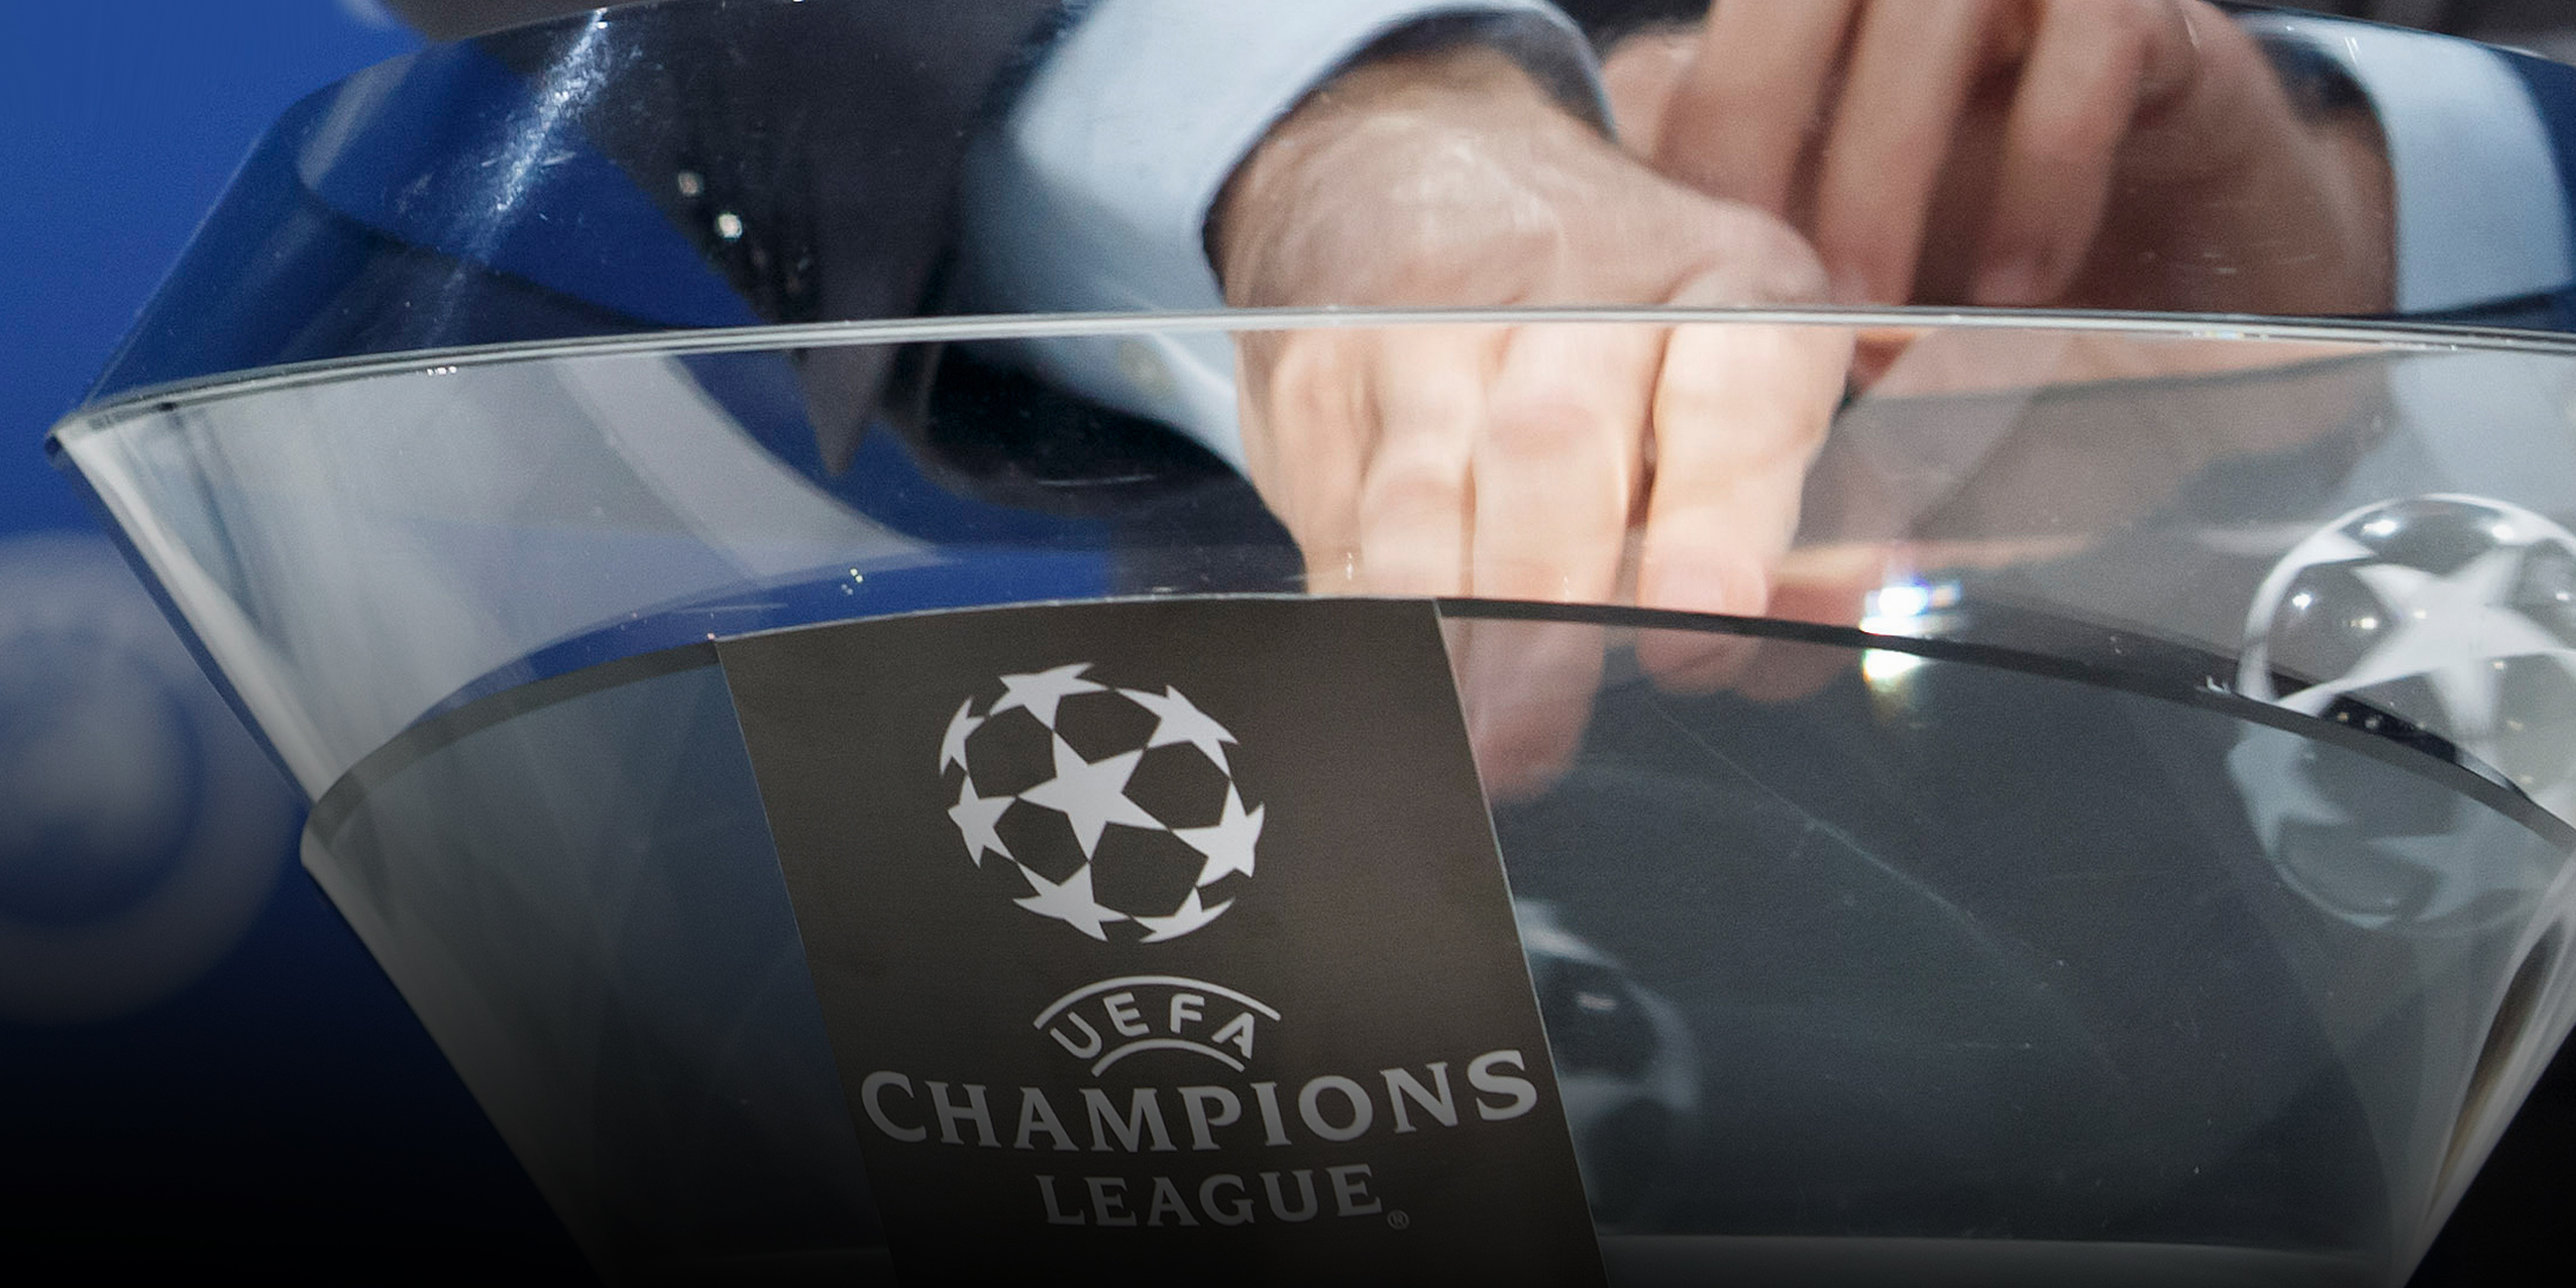 Der stellvertretende Generalsekretär der UEFA, Giorgio Marchetti, nimmt die Bälle mit den Namen der Fußballvereine aus der Urne heraus.